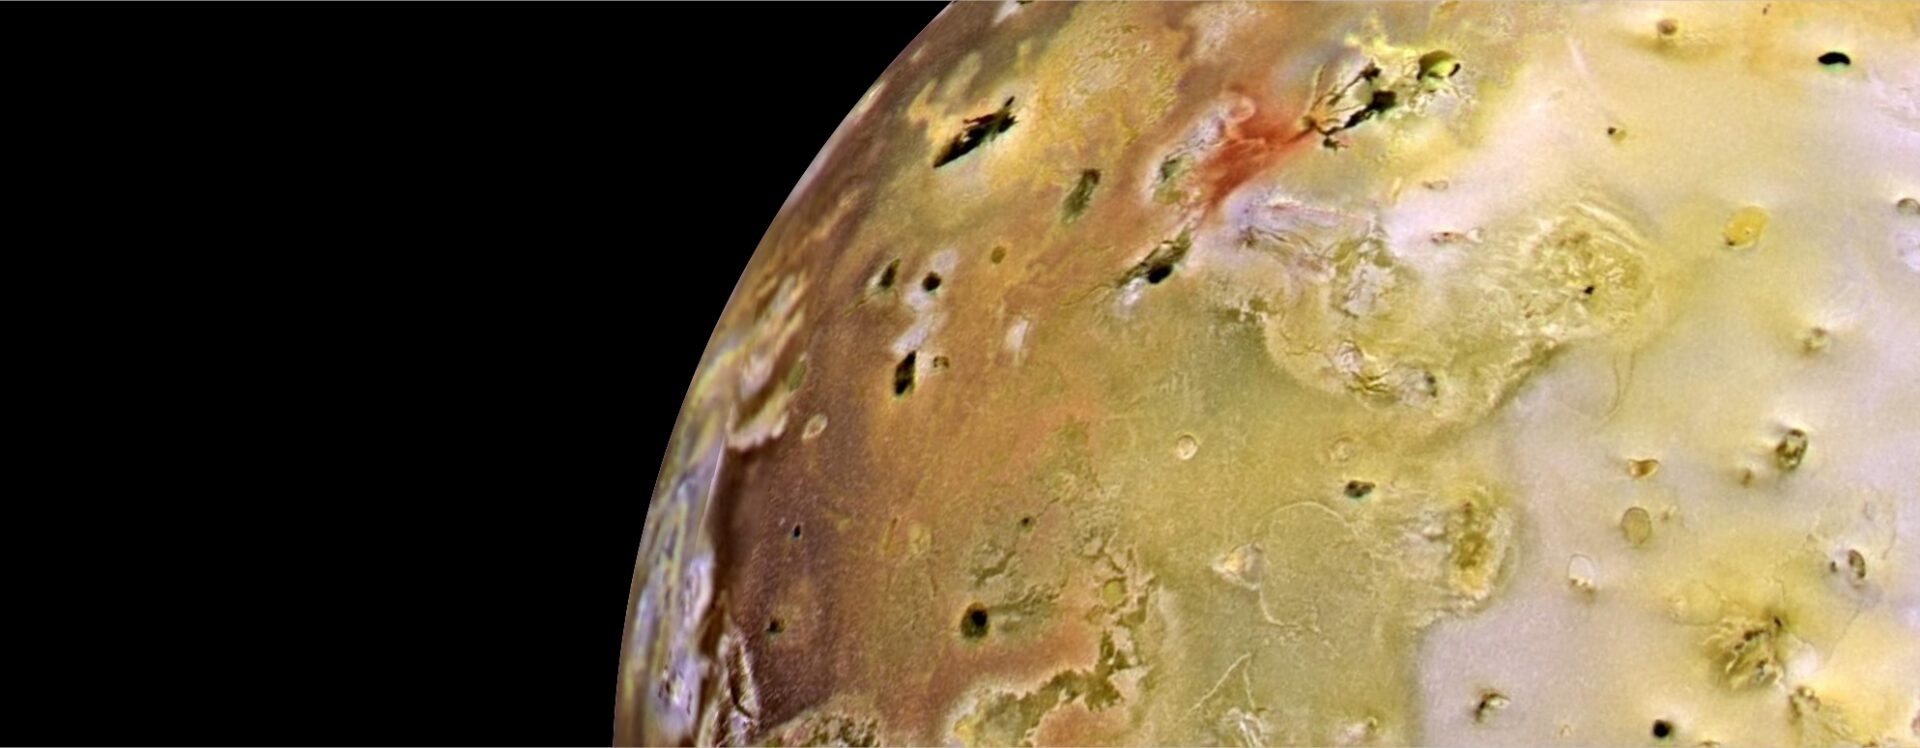 Representação artística da sonda Galileu passando pela lua Io. Fonte: NASA